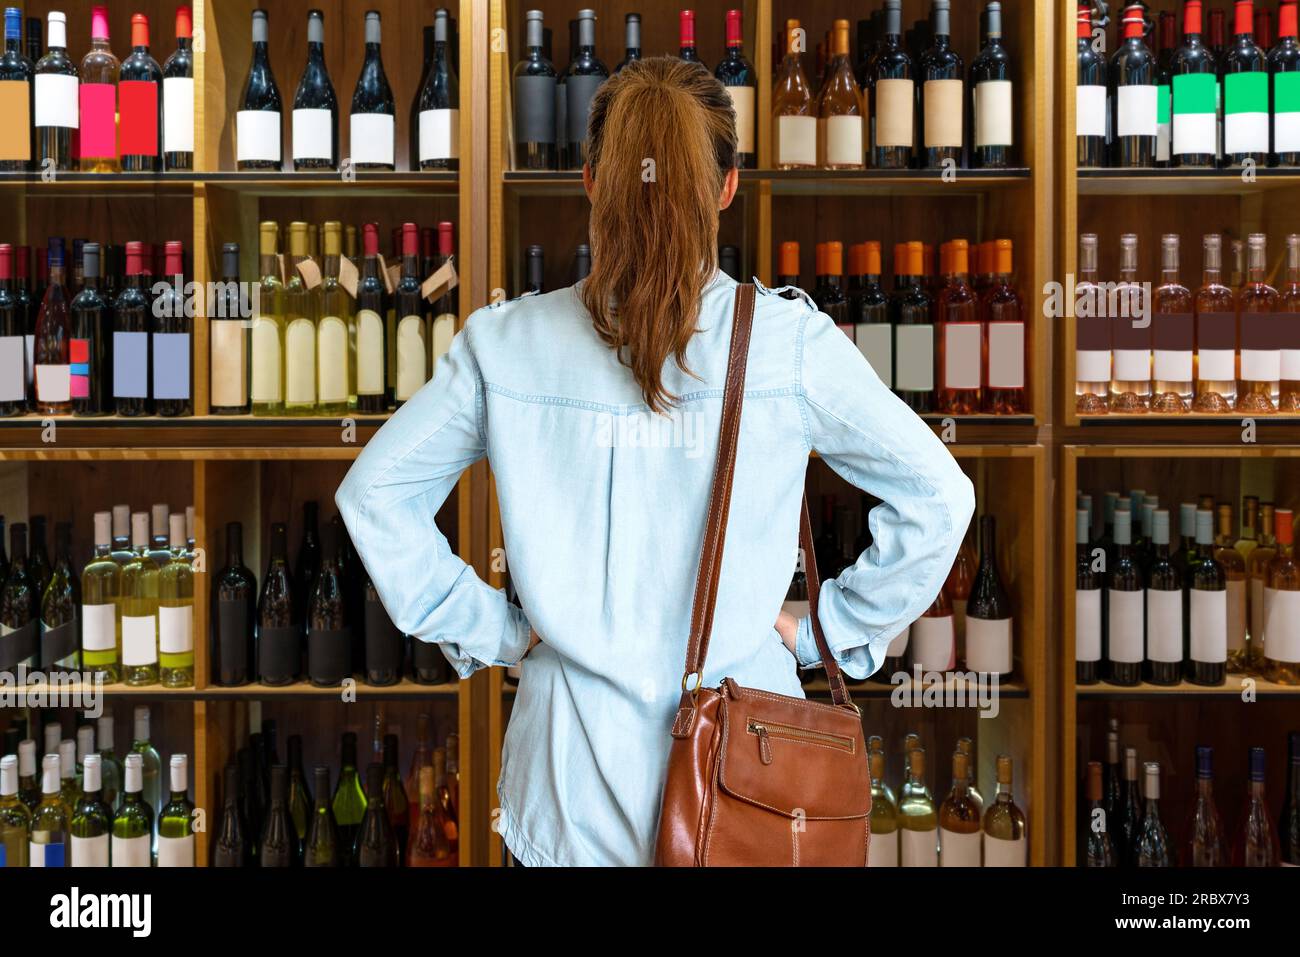 Foto retrovisiva della cliente che sceglie il vino in negozio, in piedi davanti agli scaffali con bottiglie di vino. Foto Stock